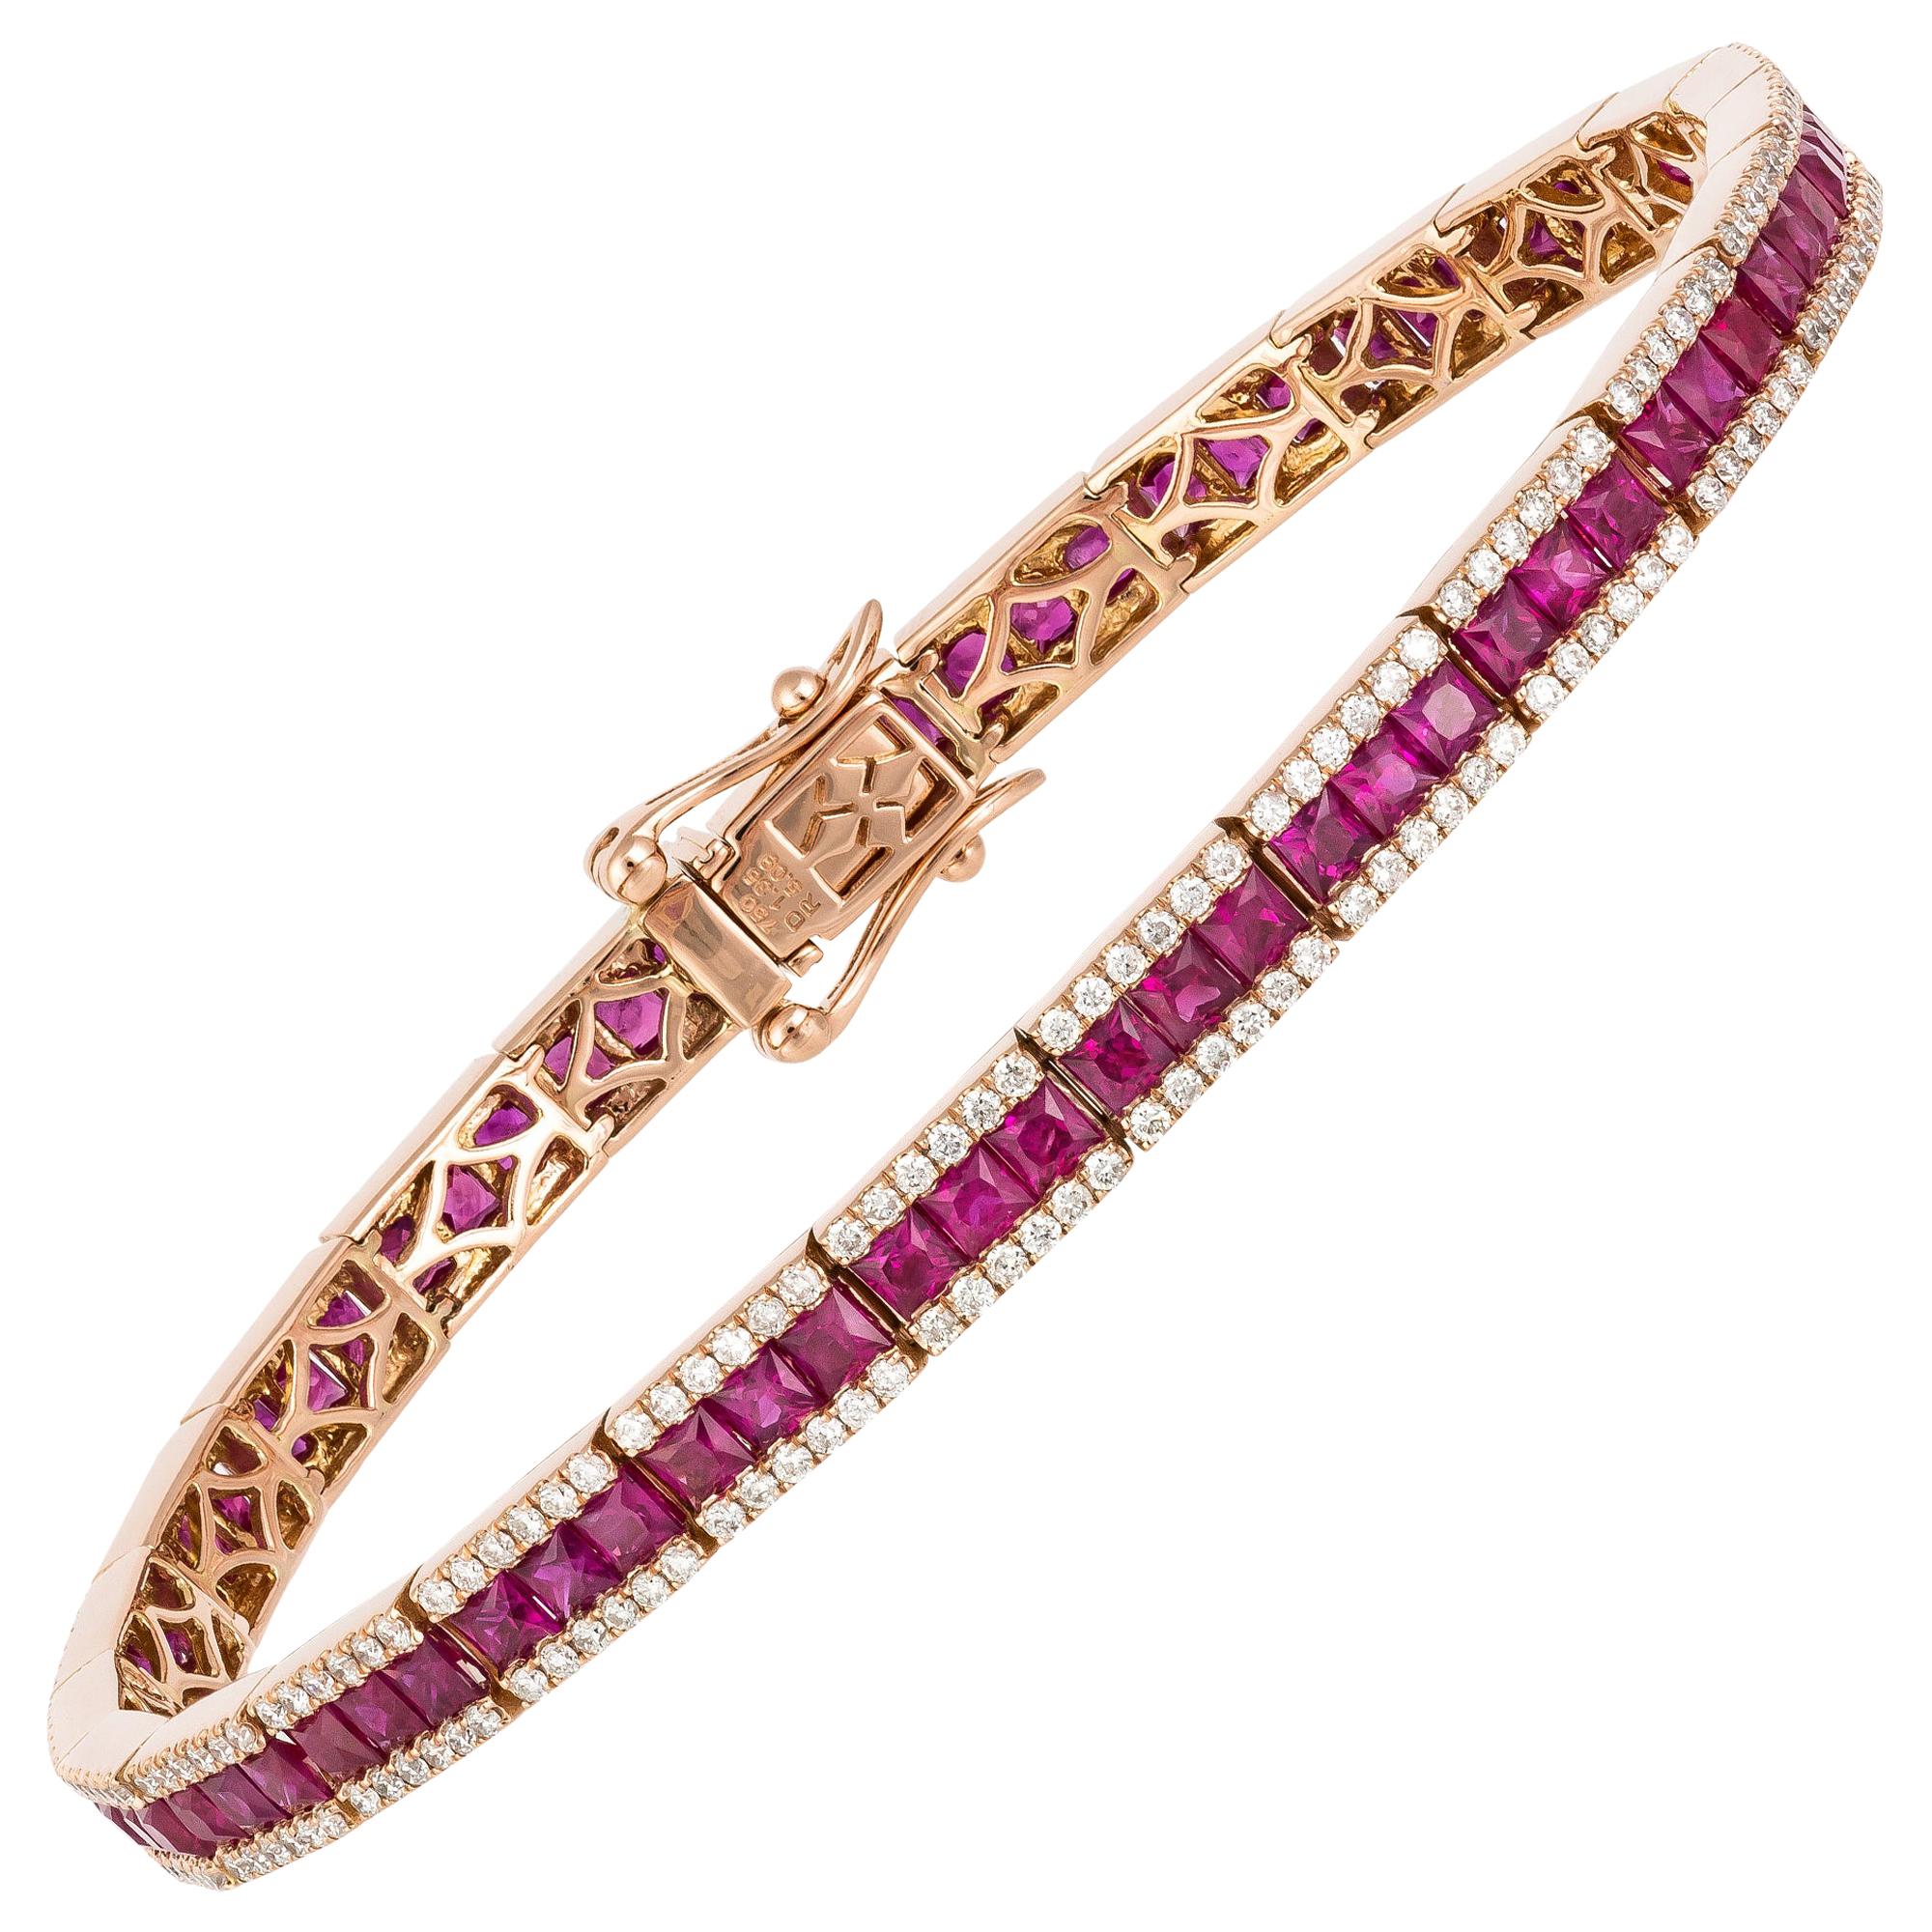 Bracelet tennis en or rose 18 carats avec diamants 1,35 carat/300 pièces, rubis 5,09 carats